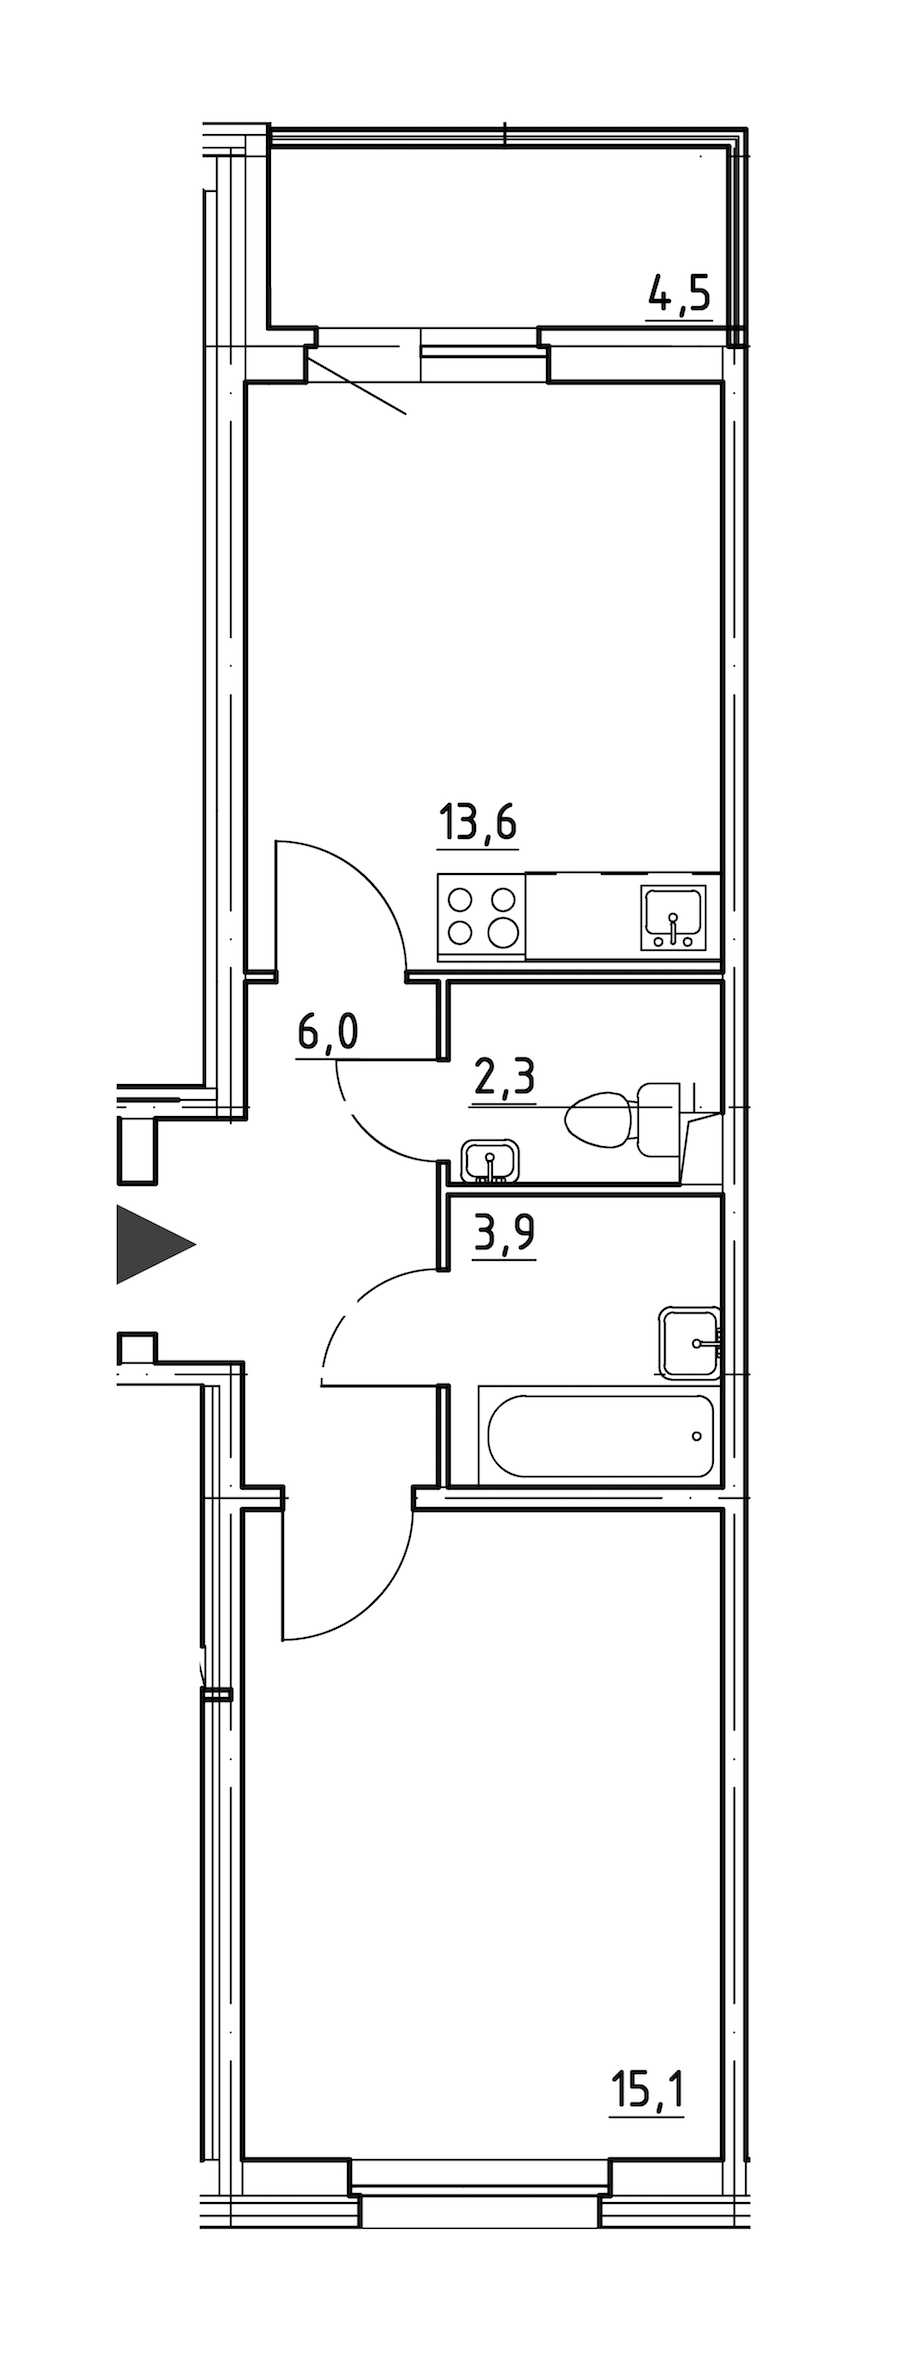 Однокомнатная квартира в : площадь 43.2 м2 , этаж: 1 – купить в Санкт-Петербурге